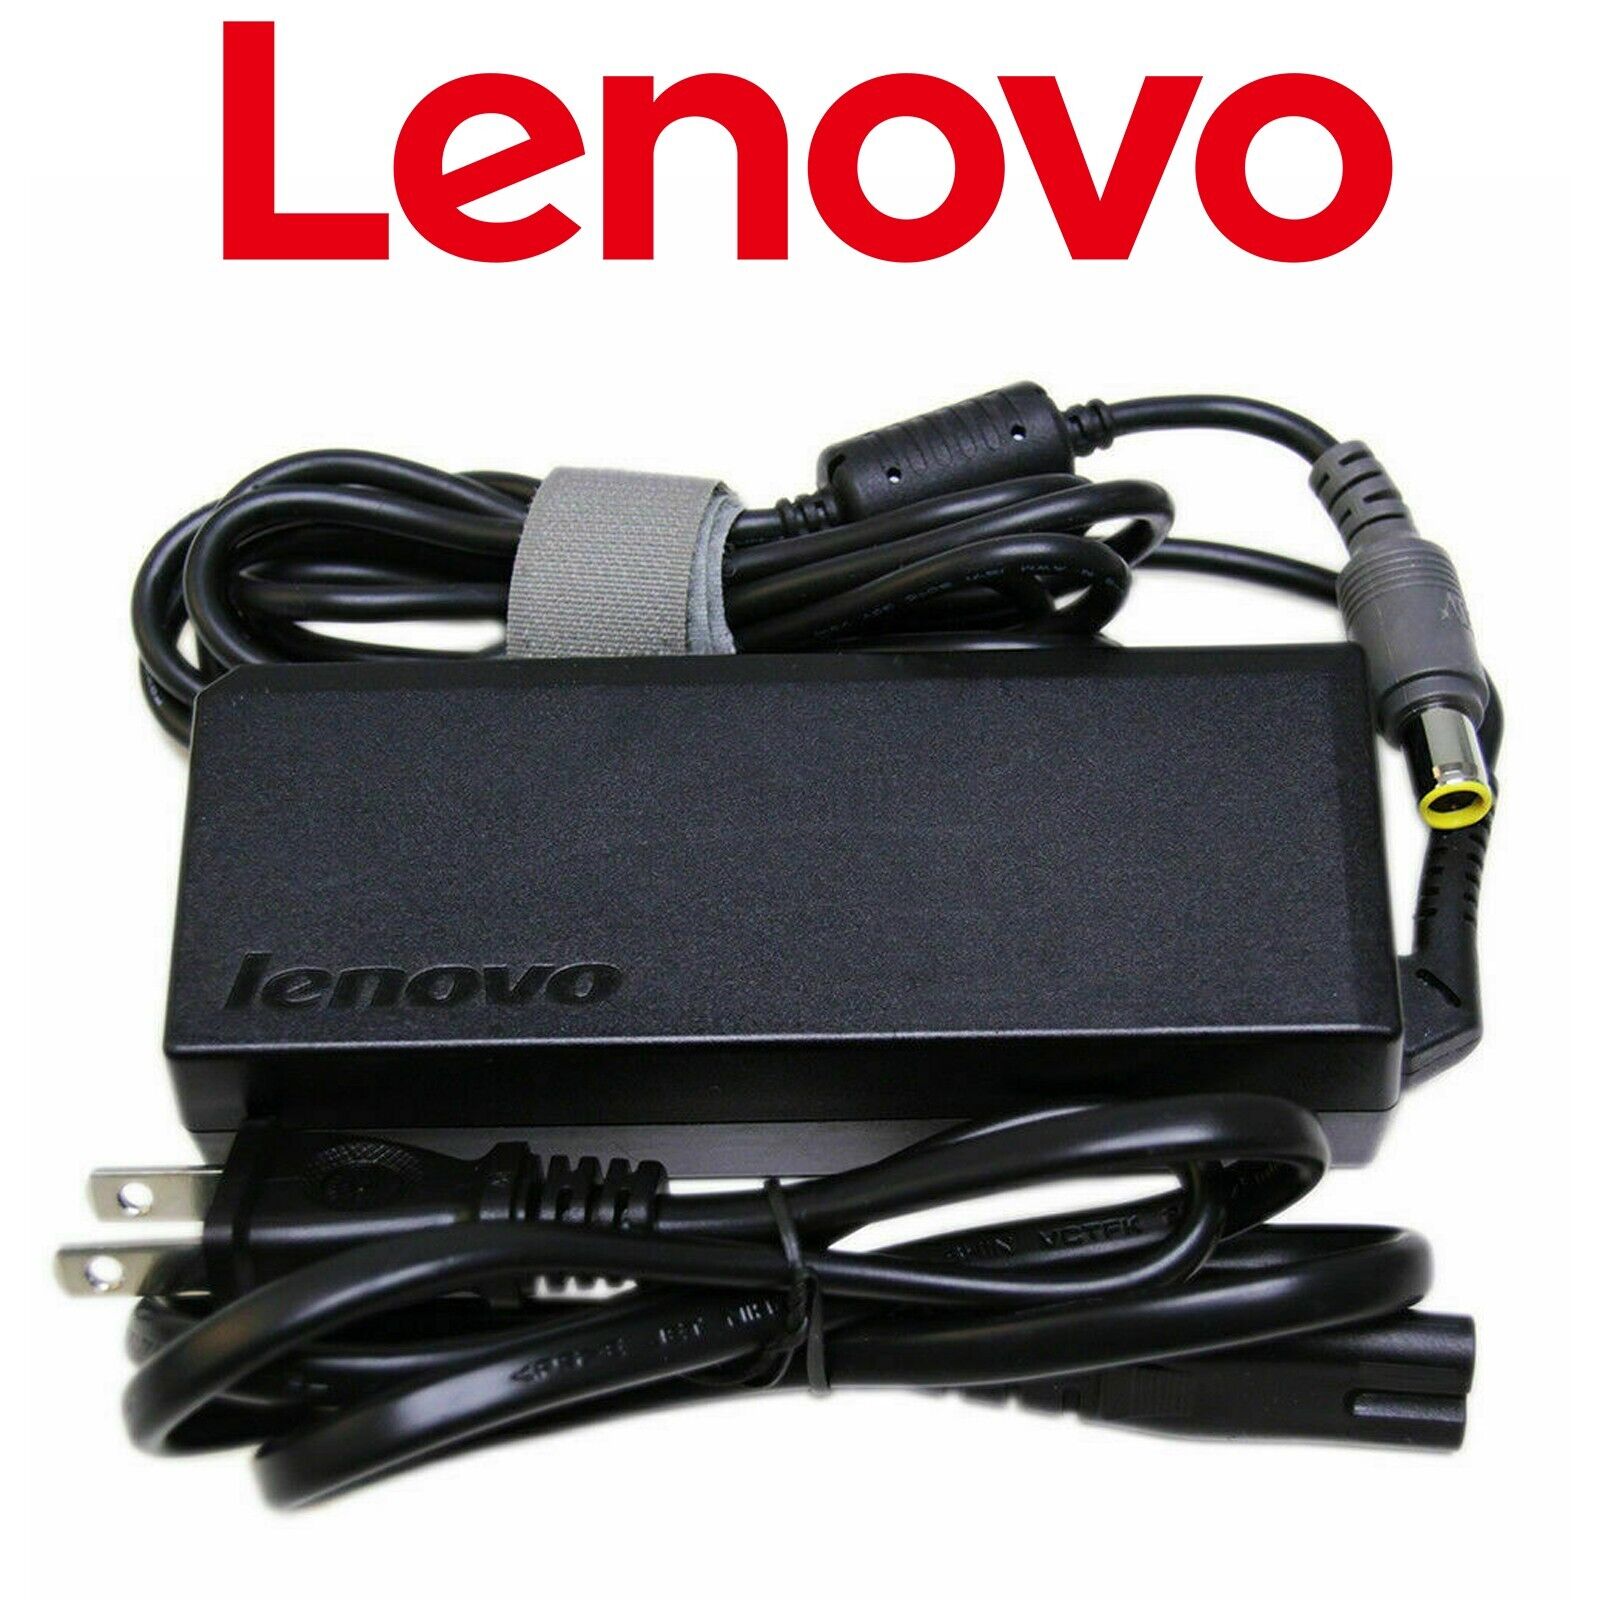 Original Lenovo AC/DC Power Adapter for Laptop Thinkpad Edge E530 E535 E520 E525